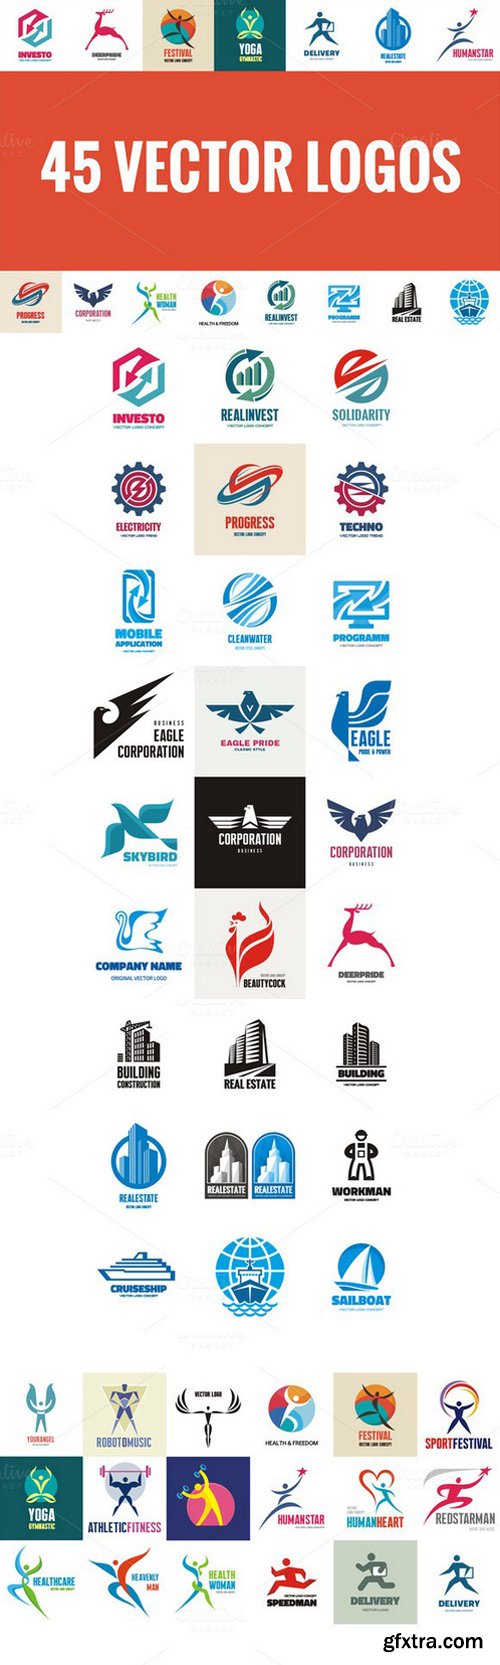 45 Creative Vector Logos